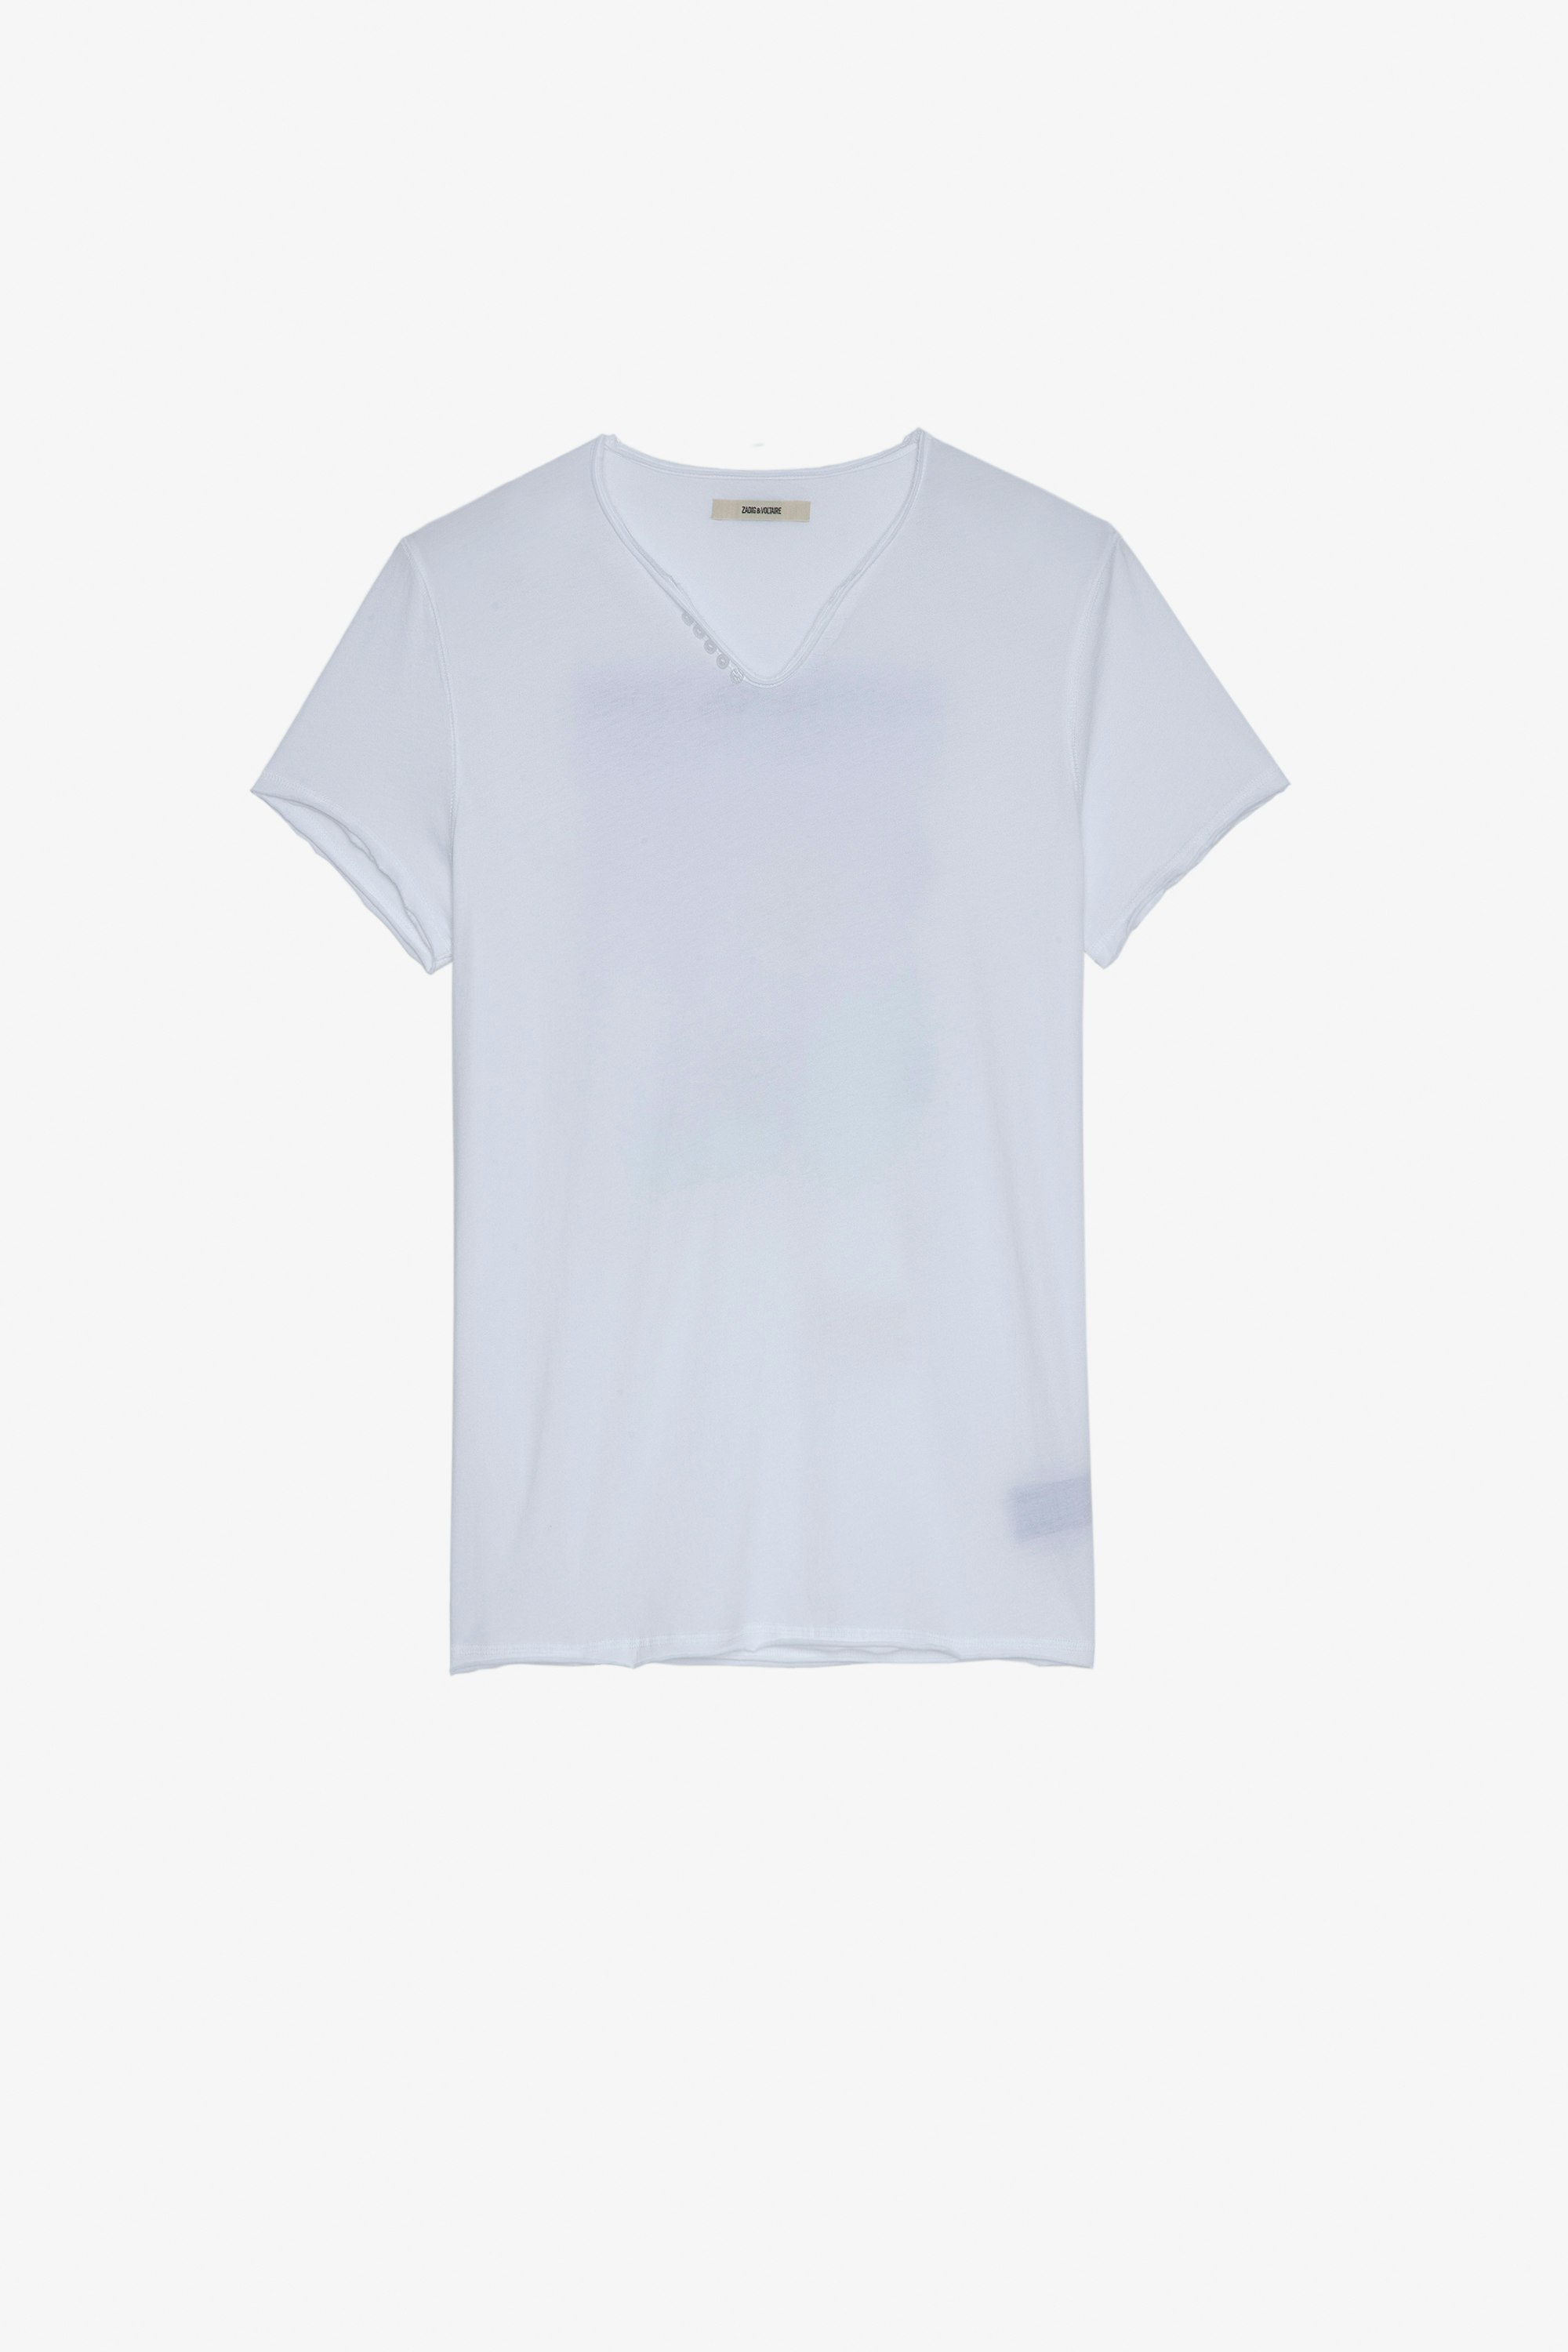 T-Shirt Monastir Herren-T-Shirt aus weißer Baumwolle mit Henley-Ausschnitt und Palmen-Fotoprint auf der Rückseite